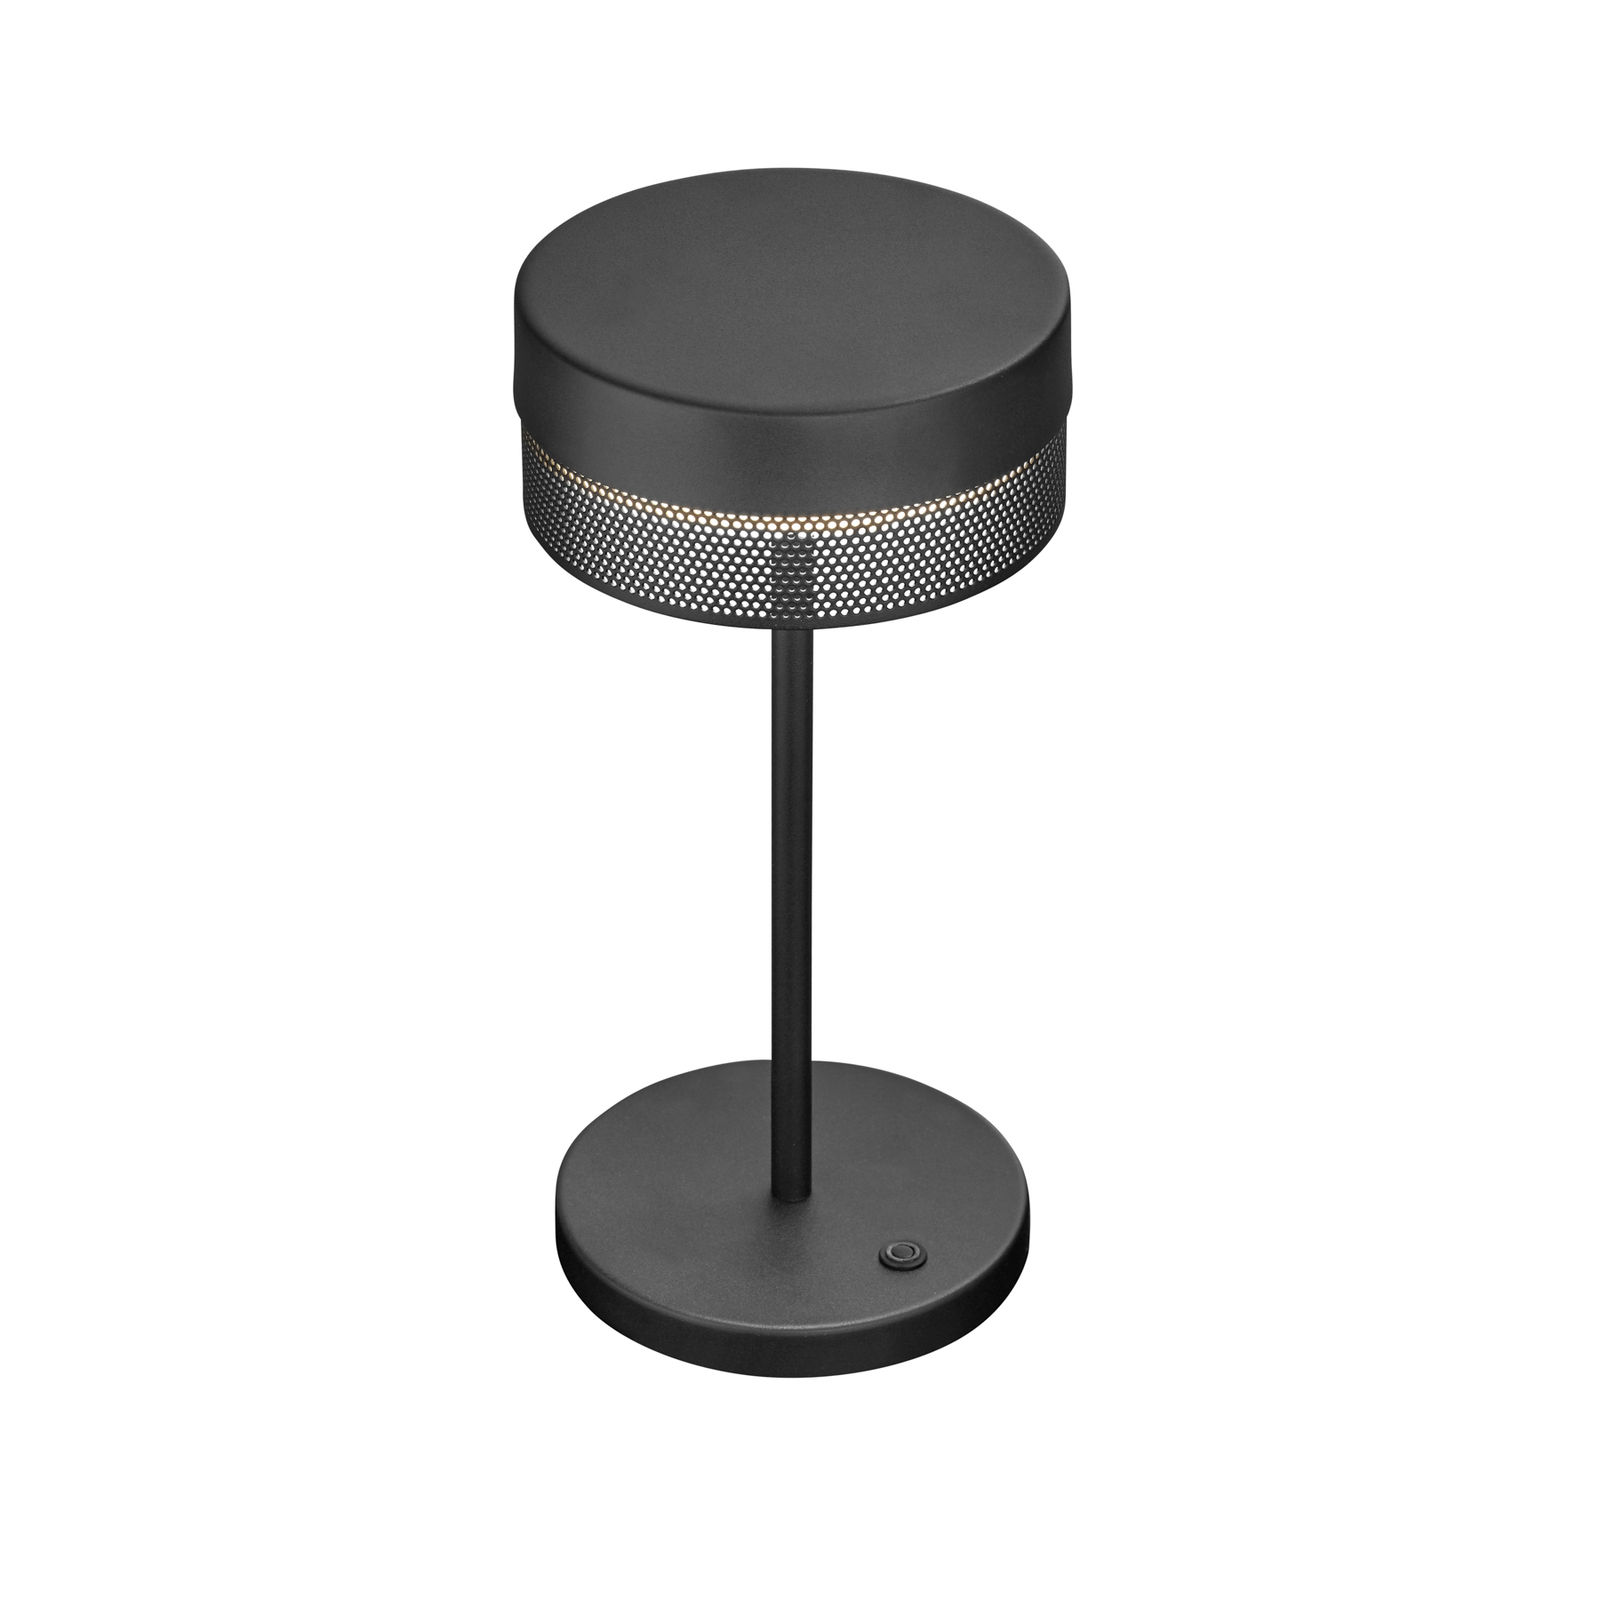 LED stalinė lempa "Mesh" įkraunama baterija, aukštis 30 cm, juoda